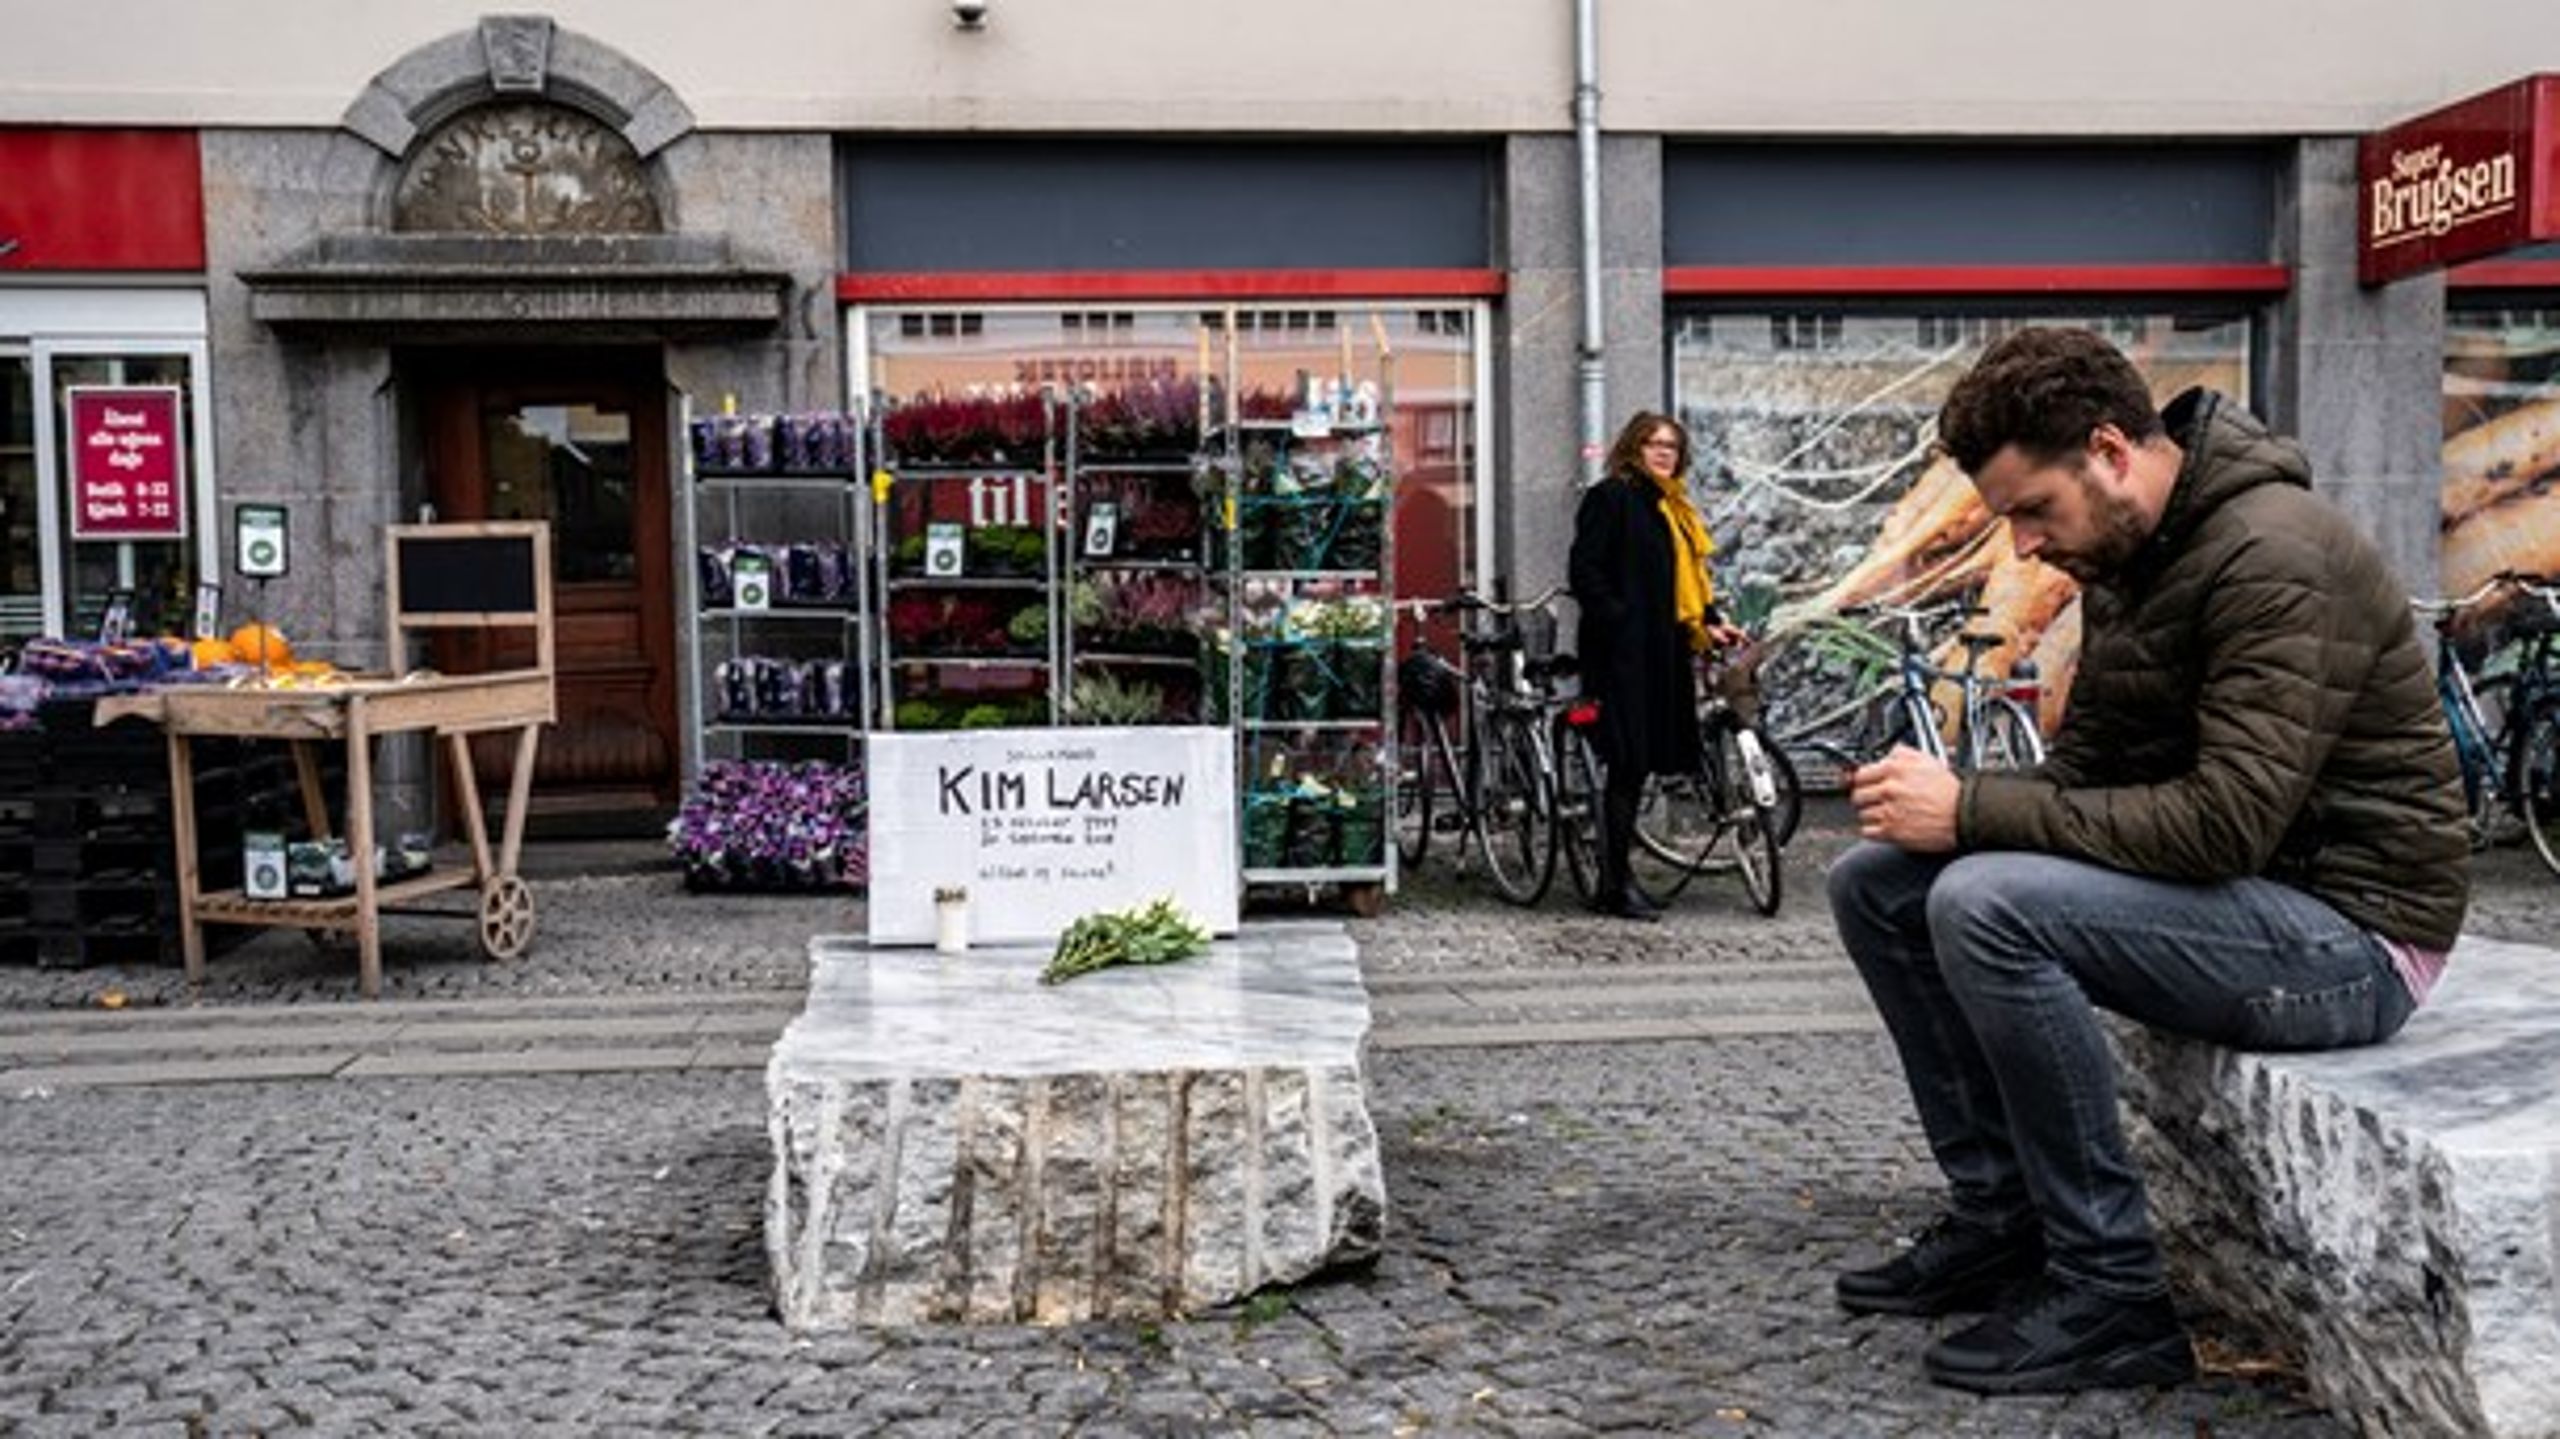 Kim Larsen sov stille ind søndag. Første blomster er blevet lagt ved Christianshavns Torv i København.